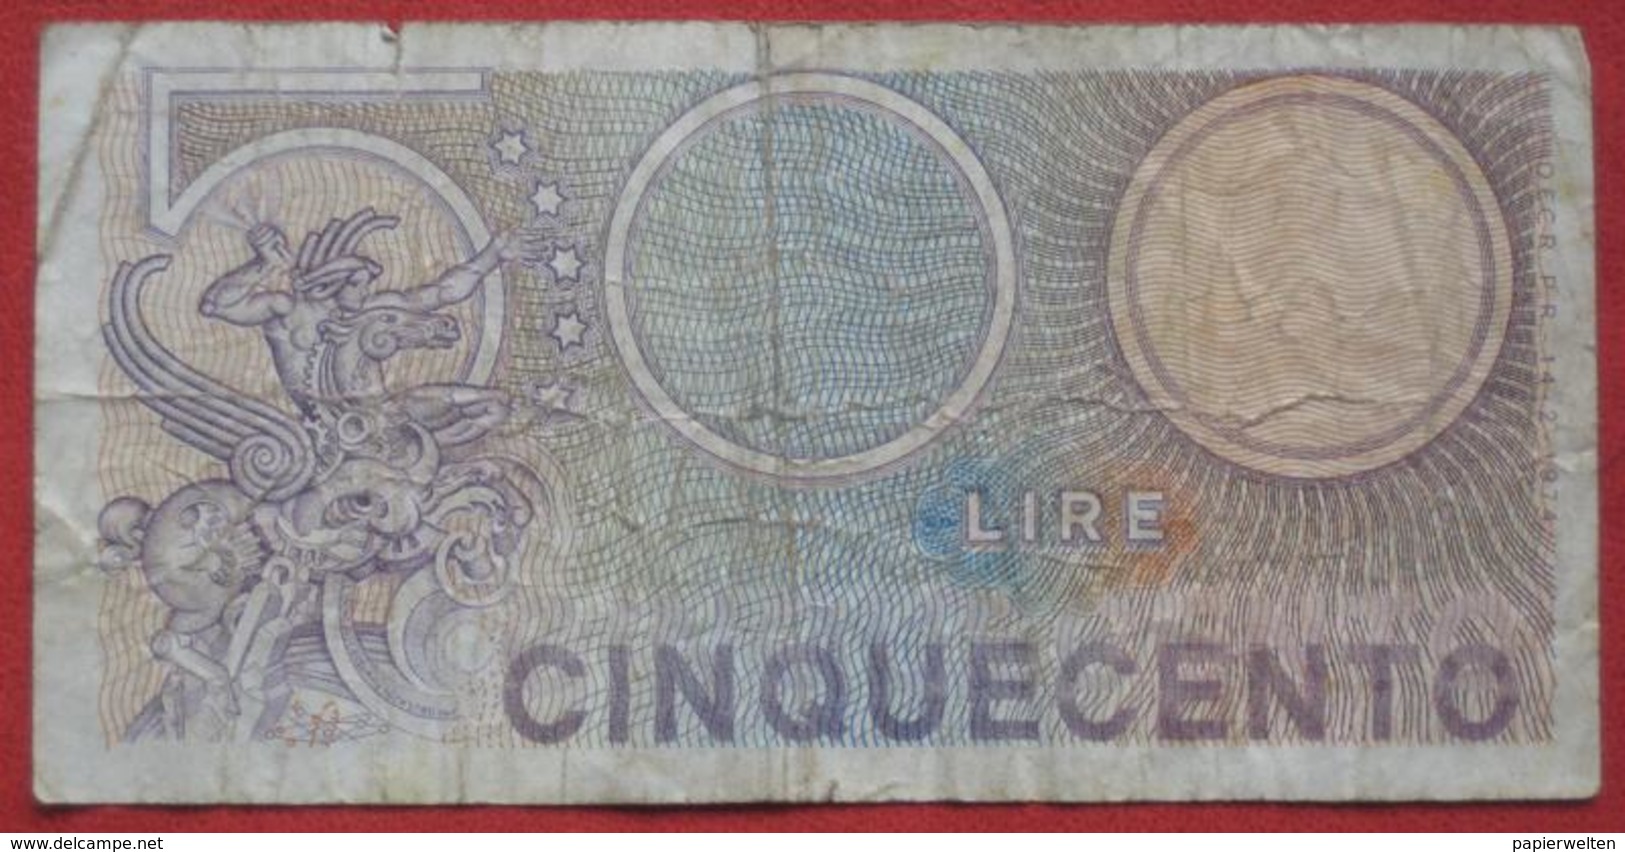 500 Lire 1974 (WPM 94) - 500 Lire